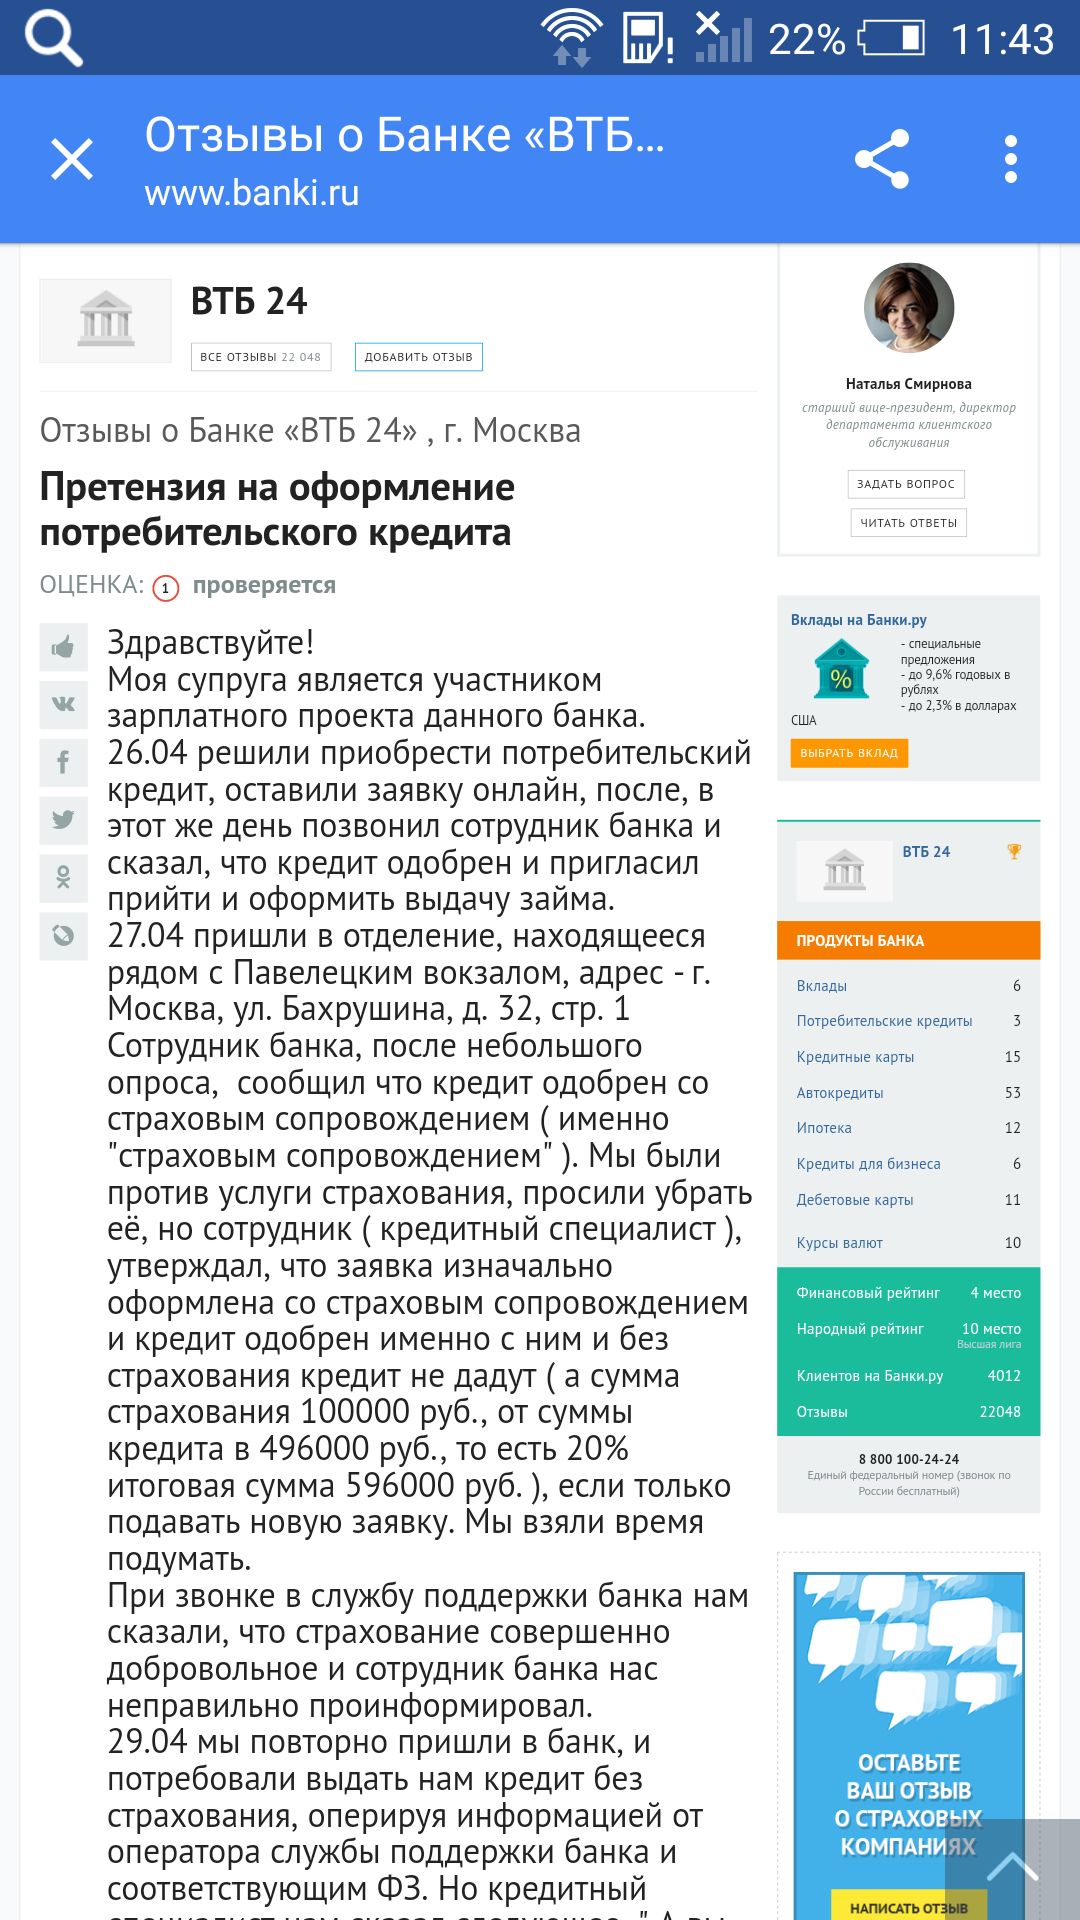 Как посмотреть за что штраф гибдд по номеру постановления москва онлайн